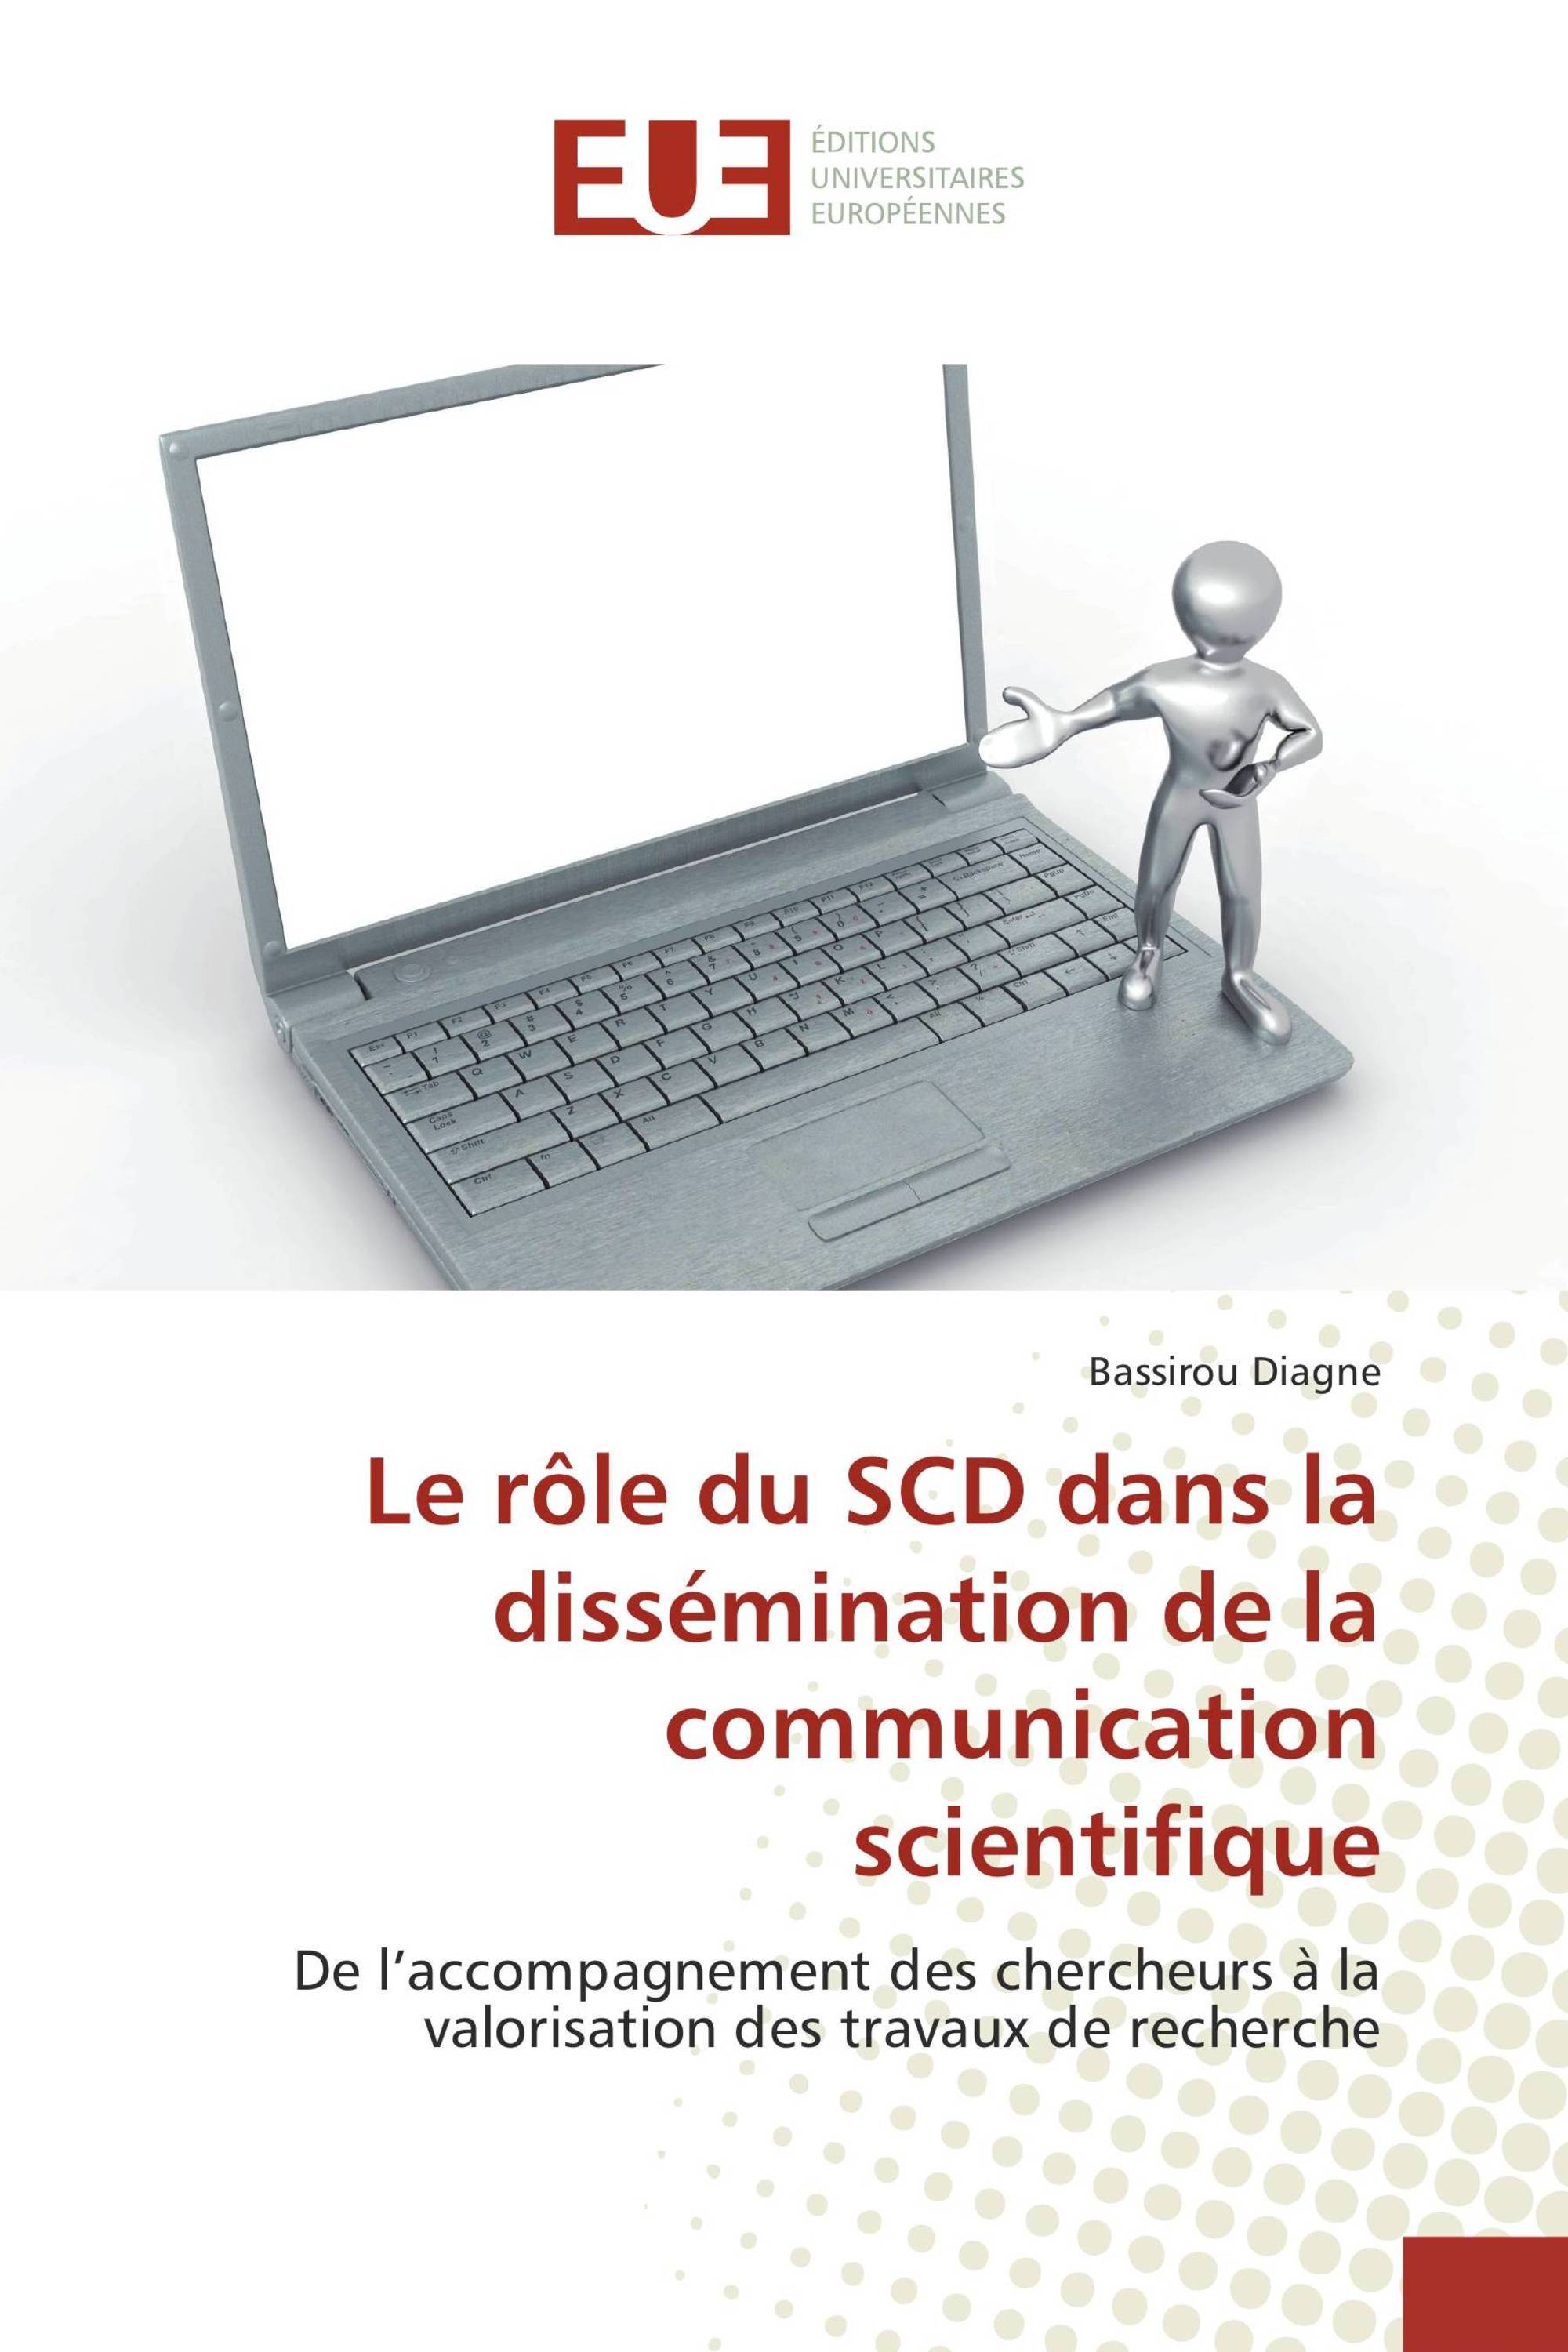 Le rôle du SCD dans la dissémination de la communication scientifique